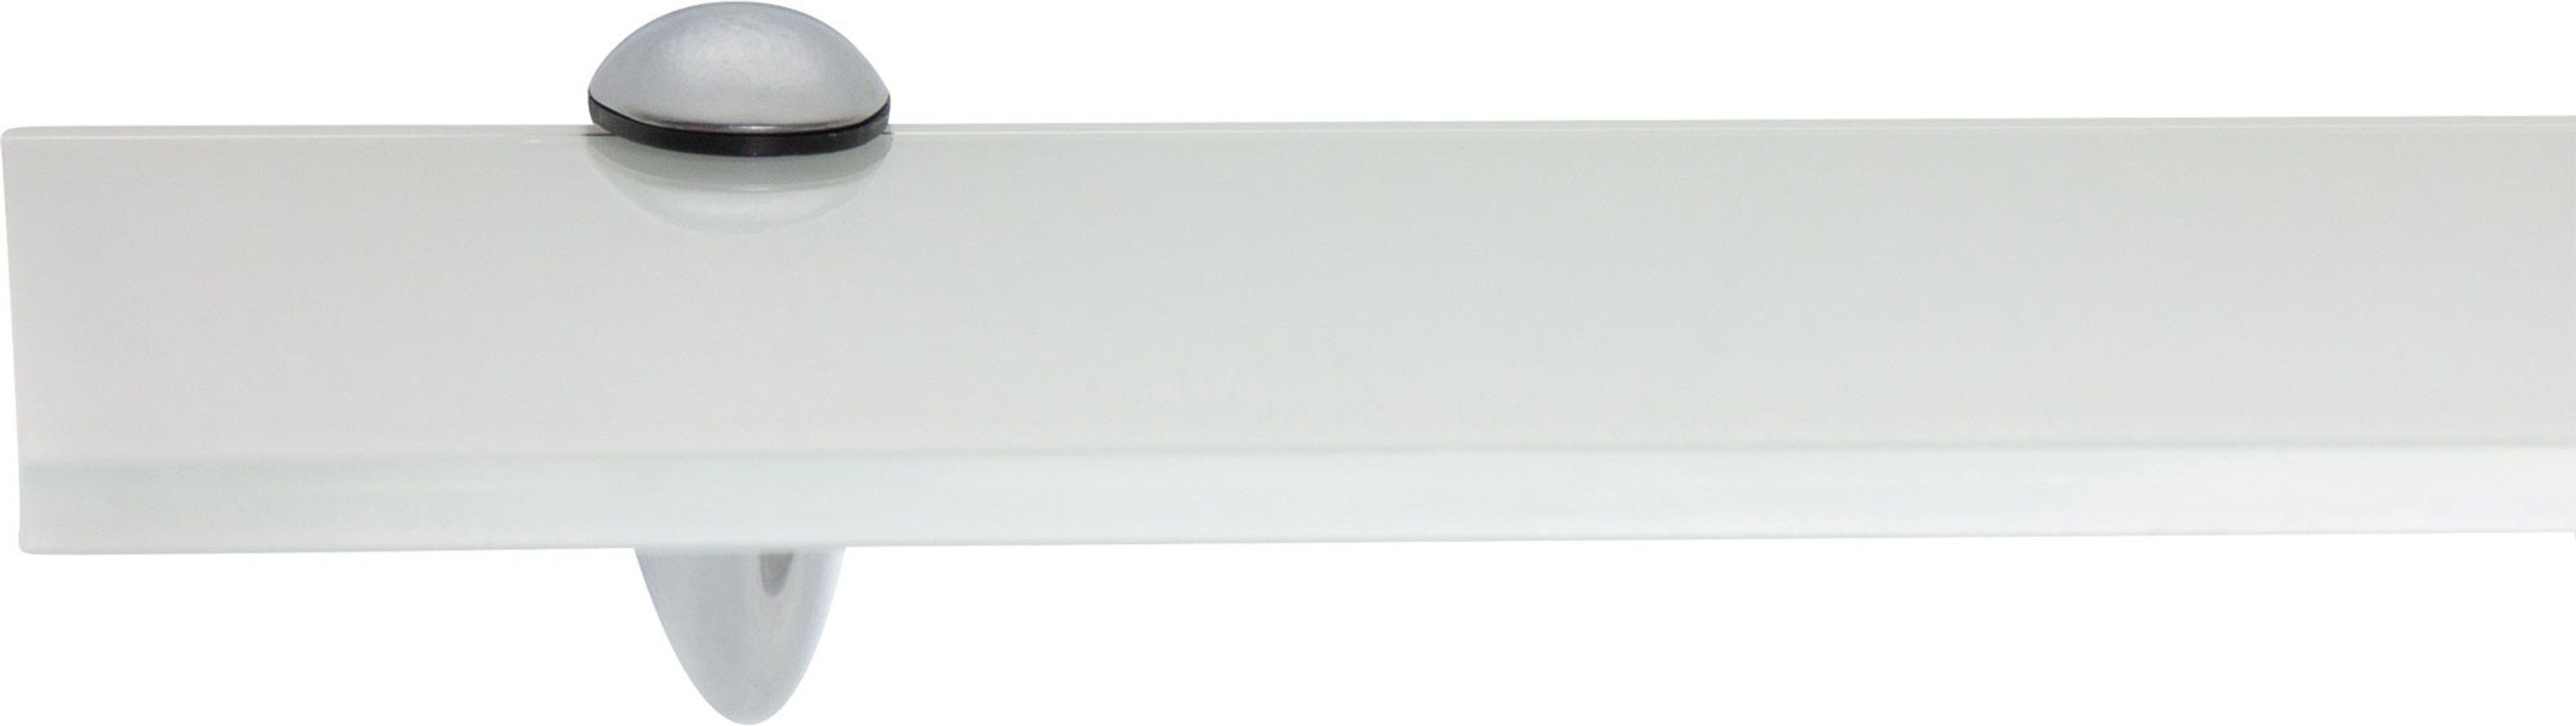 ib style Wandregal Glasregal 8mm eckig weiß 40 x 15 cm + CLASSICO Verchromt, ESG-Sicherheitsglas